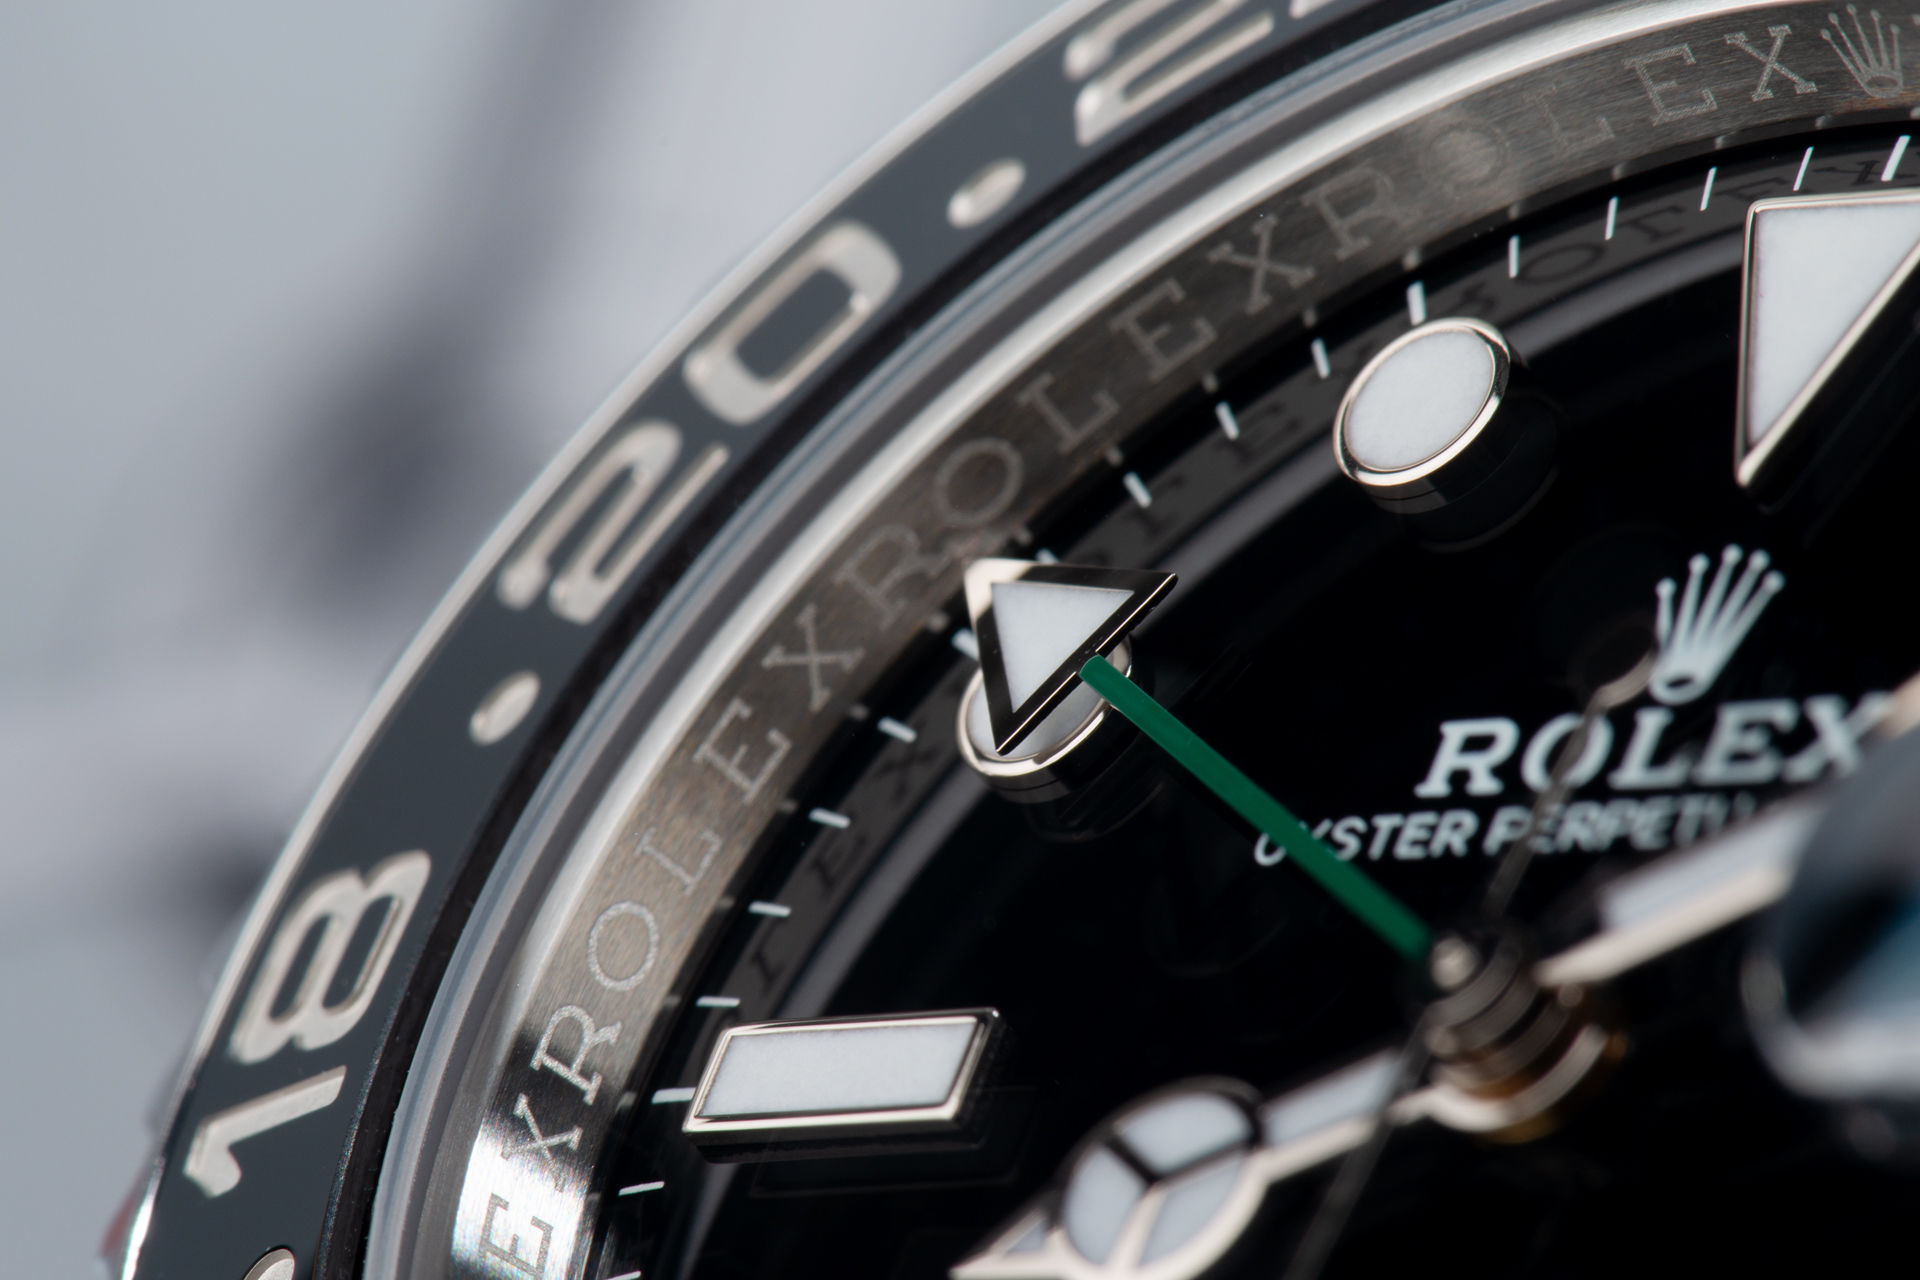 ref 116710LN | Under Rolex Warranty | Rolex GMT-Master II